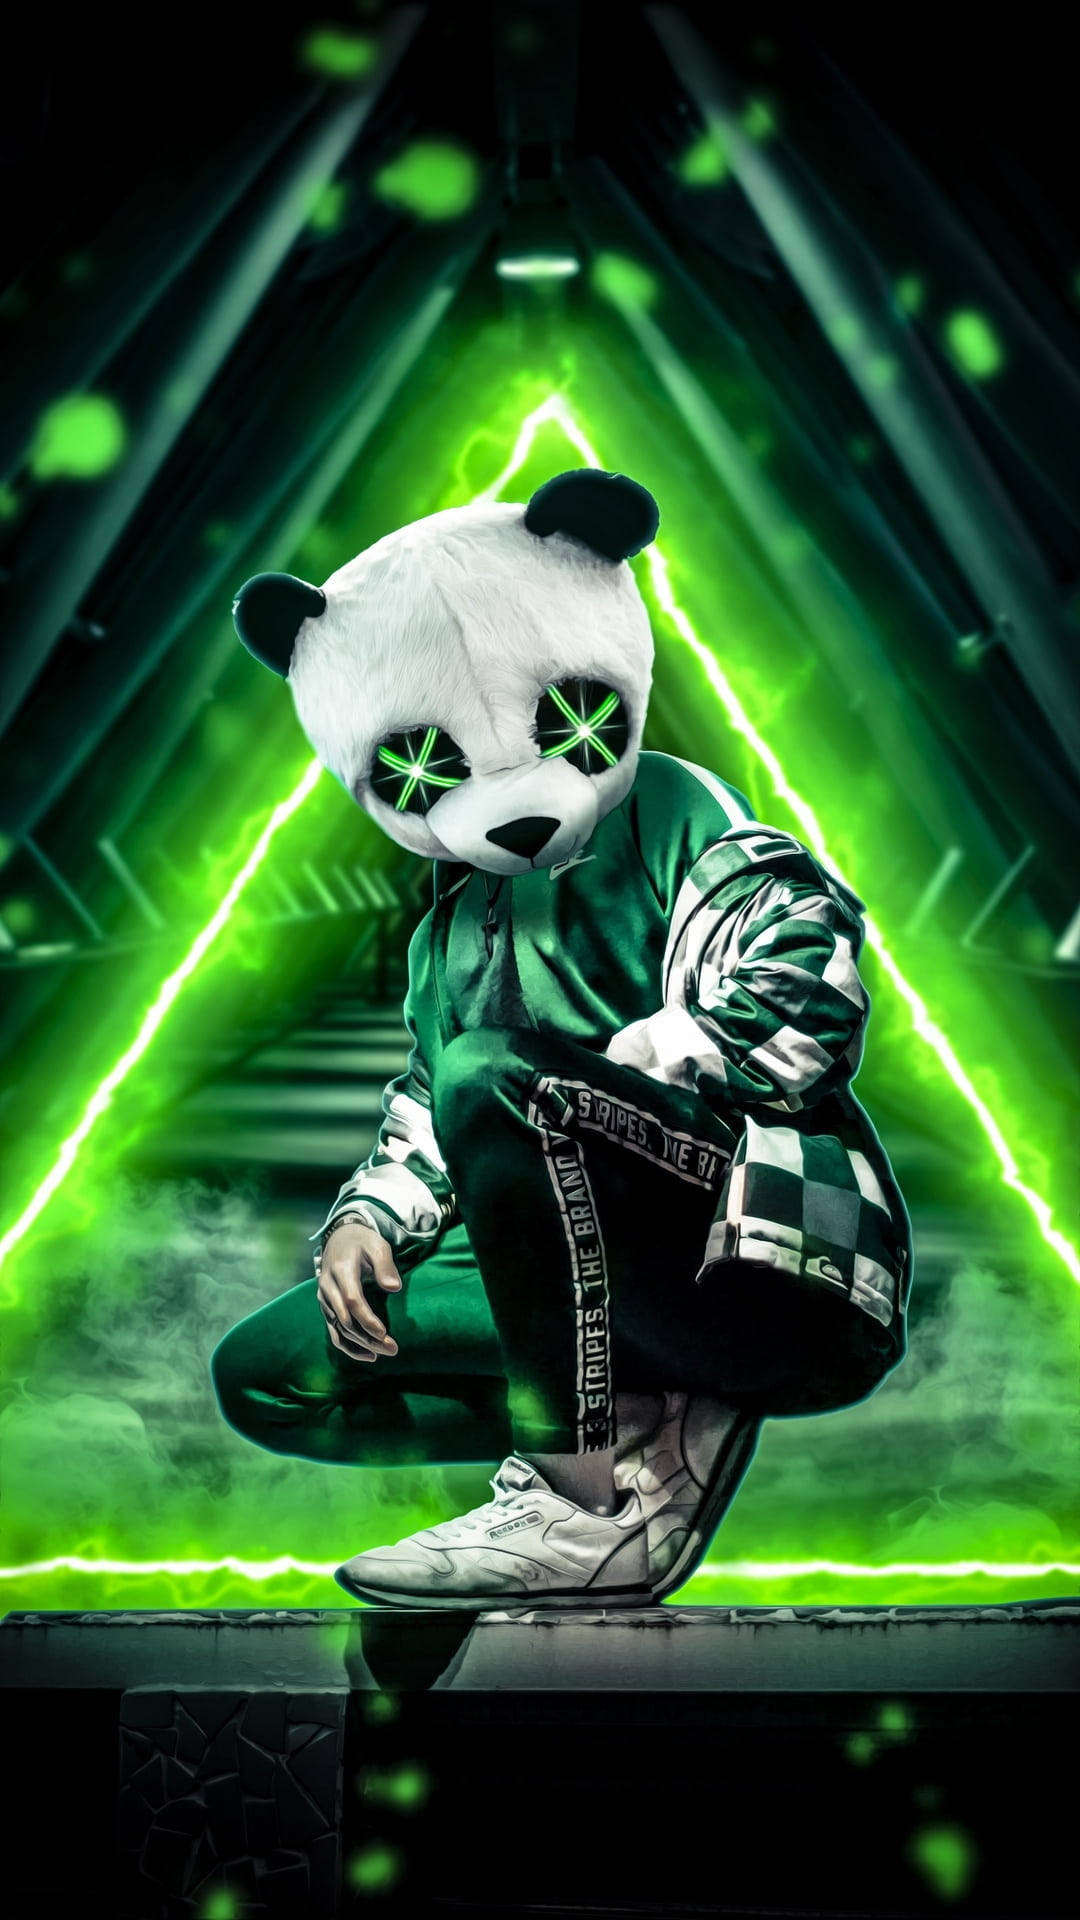 Caption: Cool Green Panda Graffiti Art Background